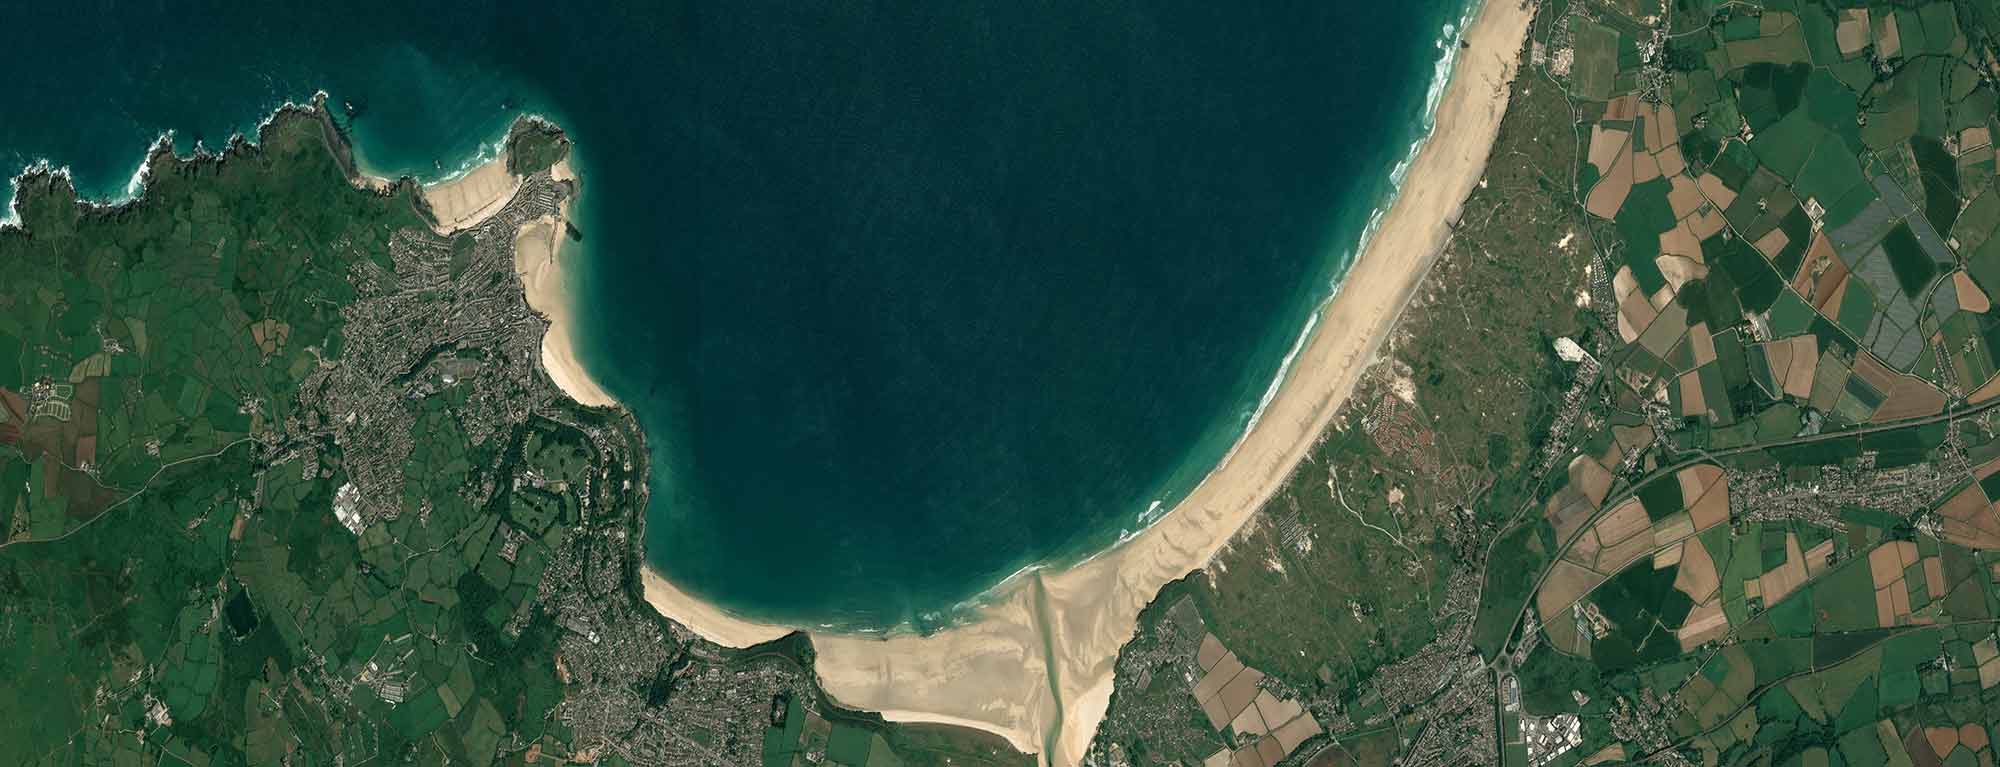 Pléiades image of Carbis Bay showing coastal waters